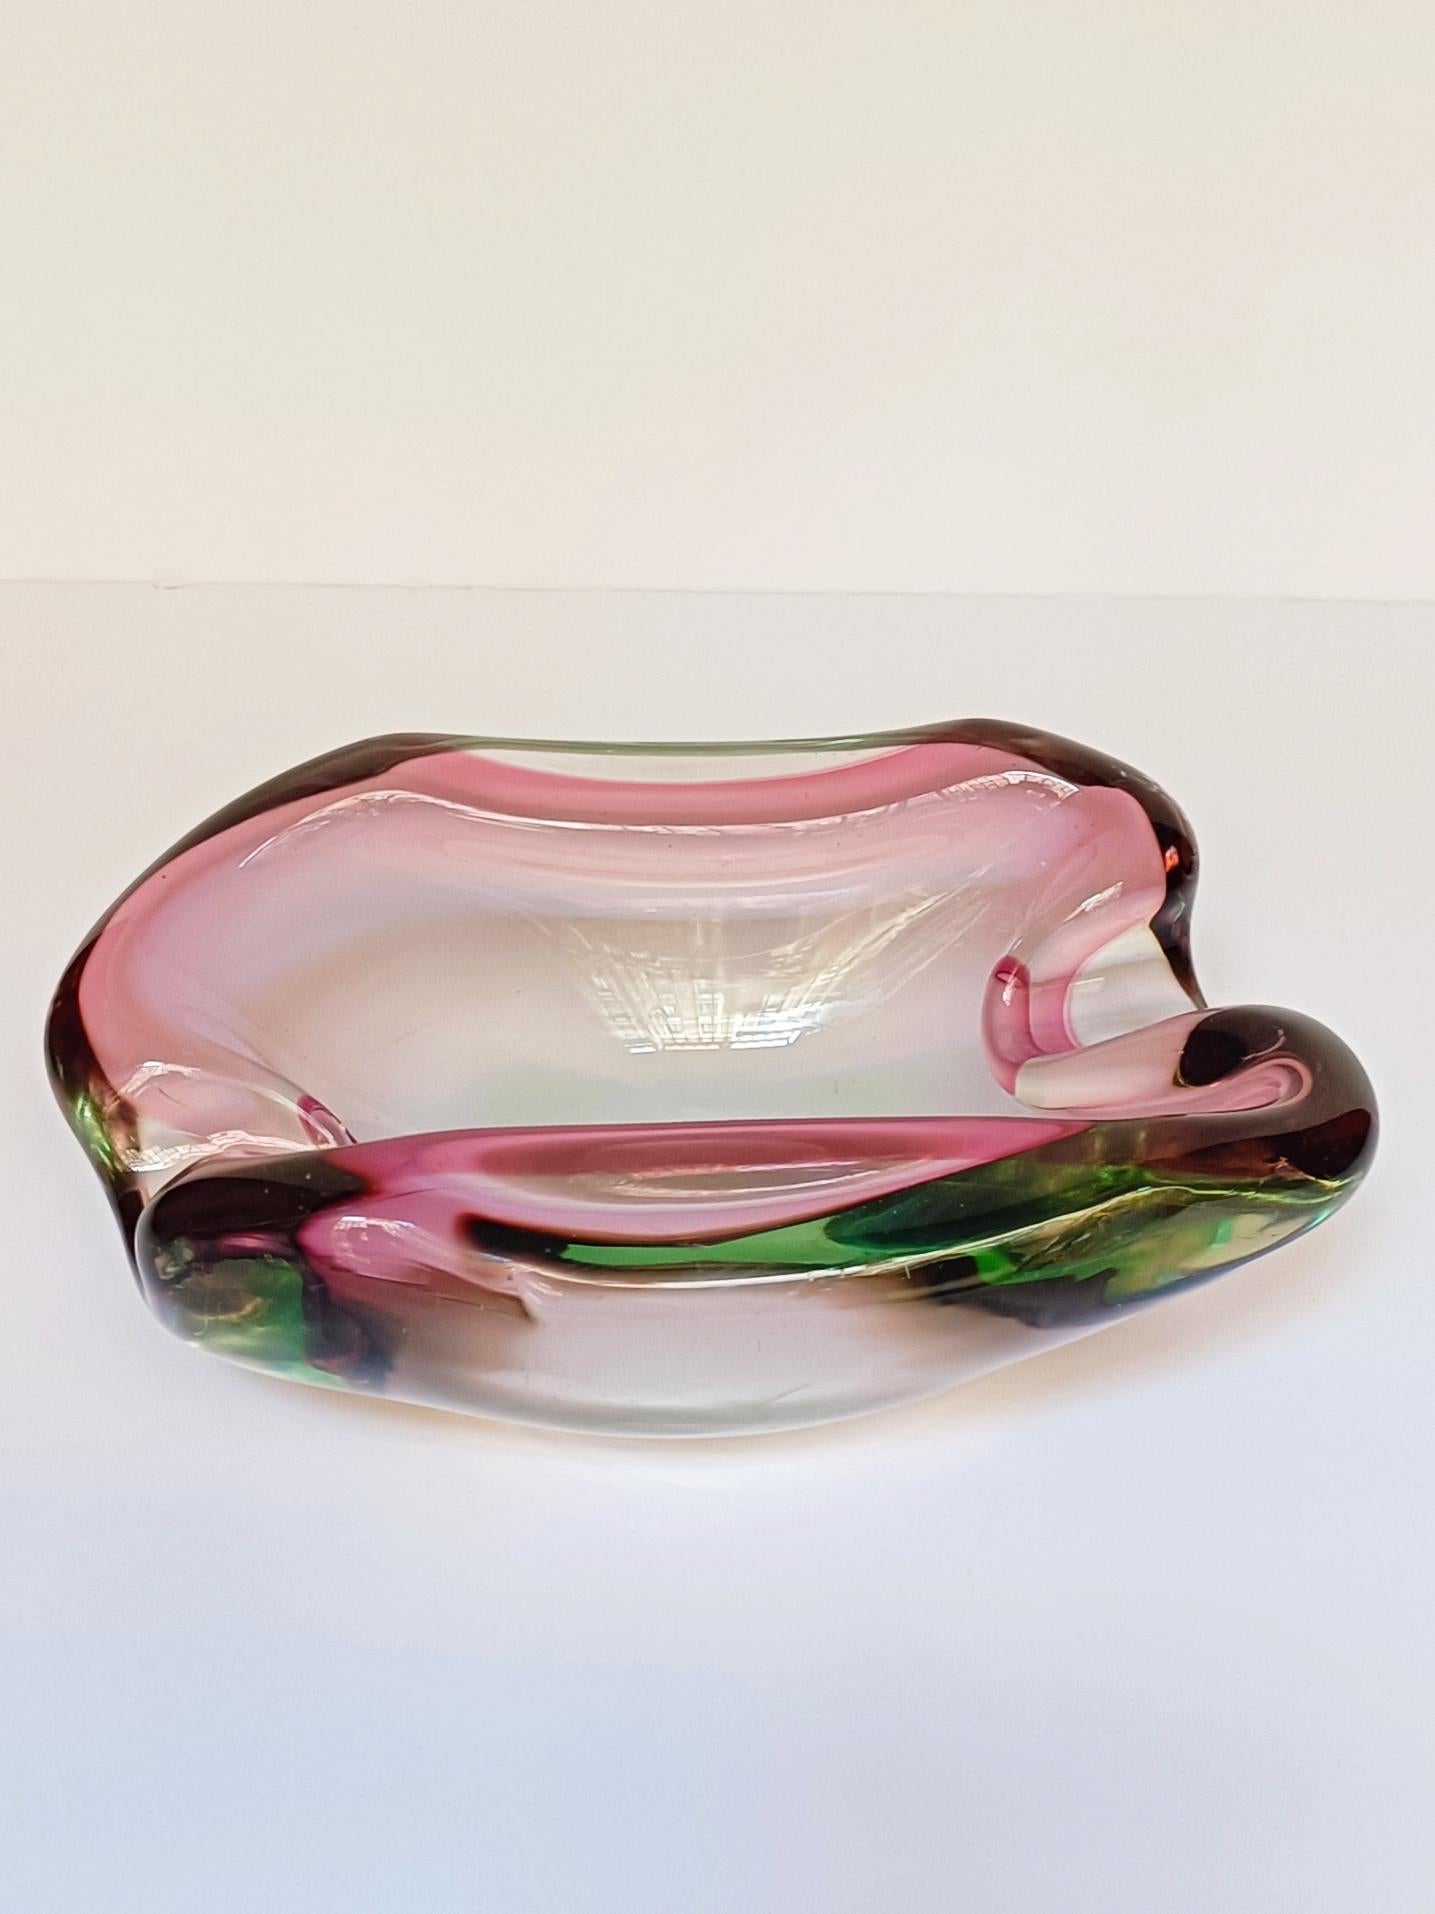 Exquisite Murano-Sommerso-Glasschale des venezianischen Künstlers Flavio Poli. Dieses für Seguso Vetri d'Arte geschaffene Stück ist in der Tat spektakulär. Es zeichnet sich durch eine organische Designlinie und ein wunderschönes, sehr schweres und